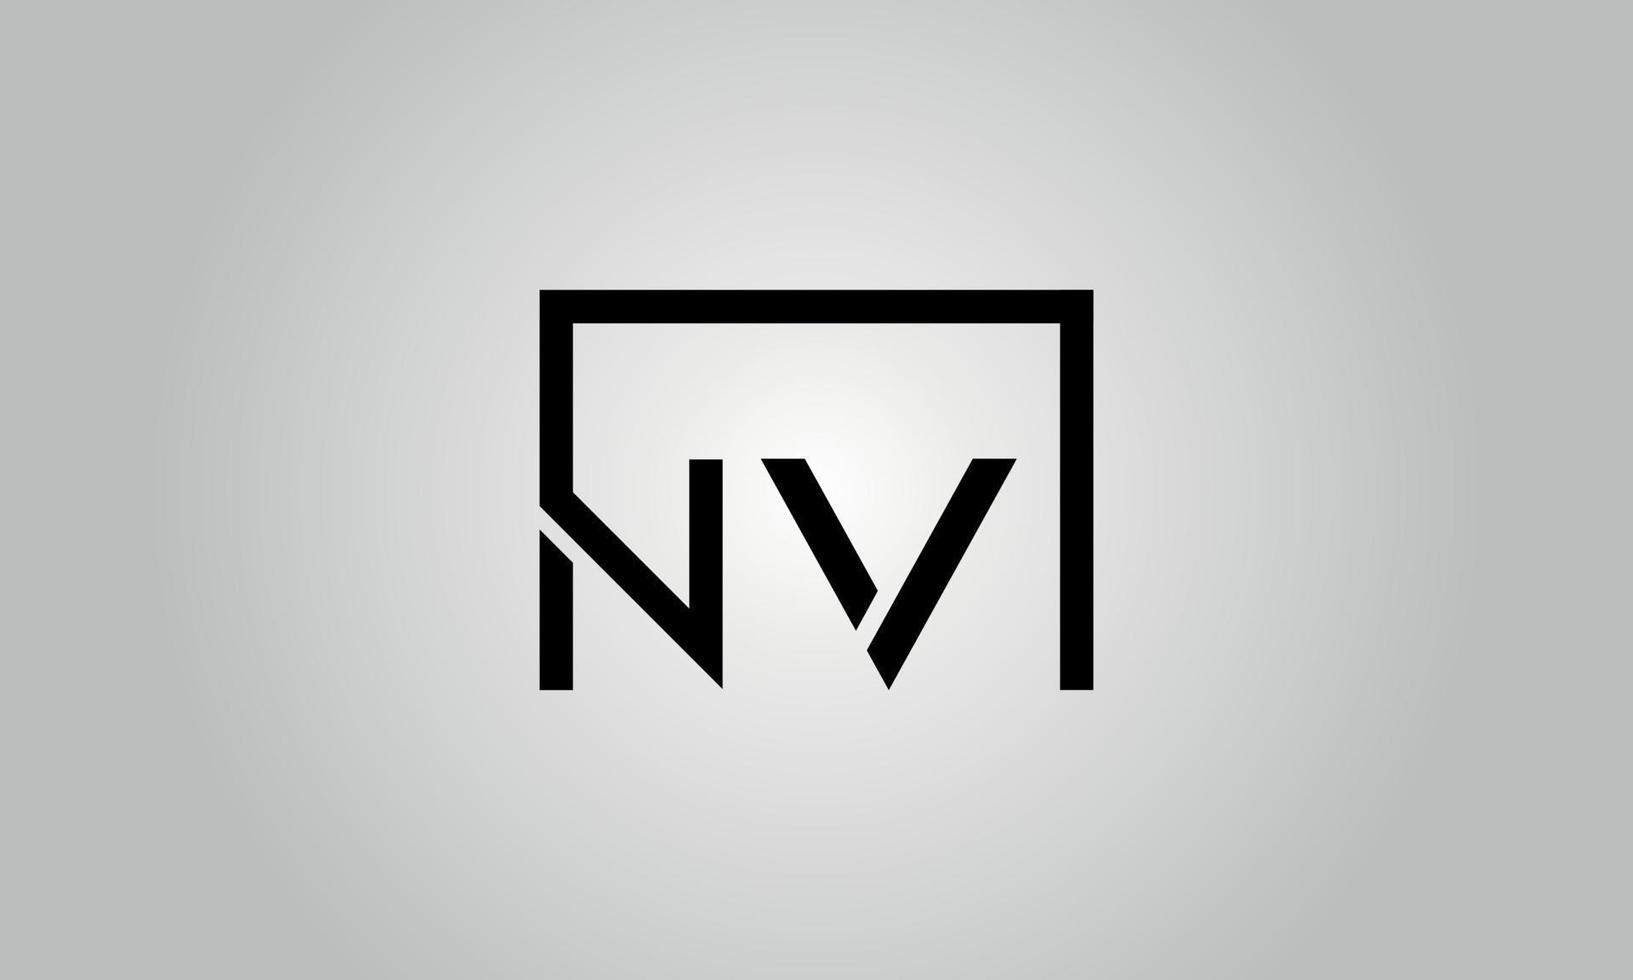 Buchstabe nv-Logo-Design. nv-Logo mit quadratischer Form in schwarzen Farben Vektor kostenlose Vektorvorlage.